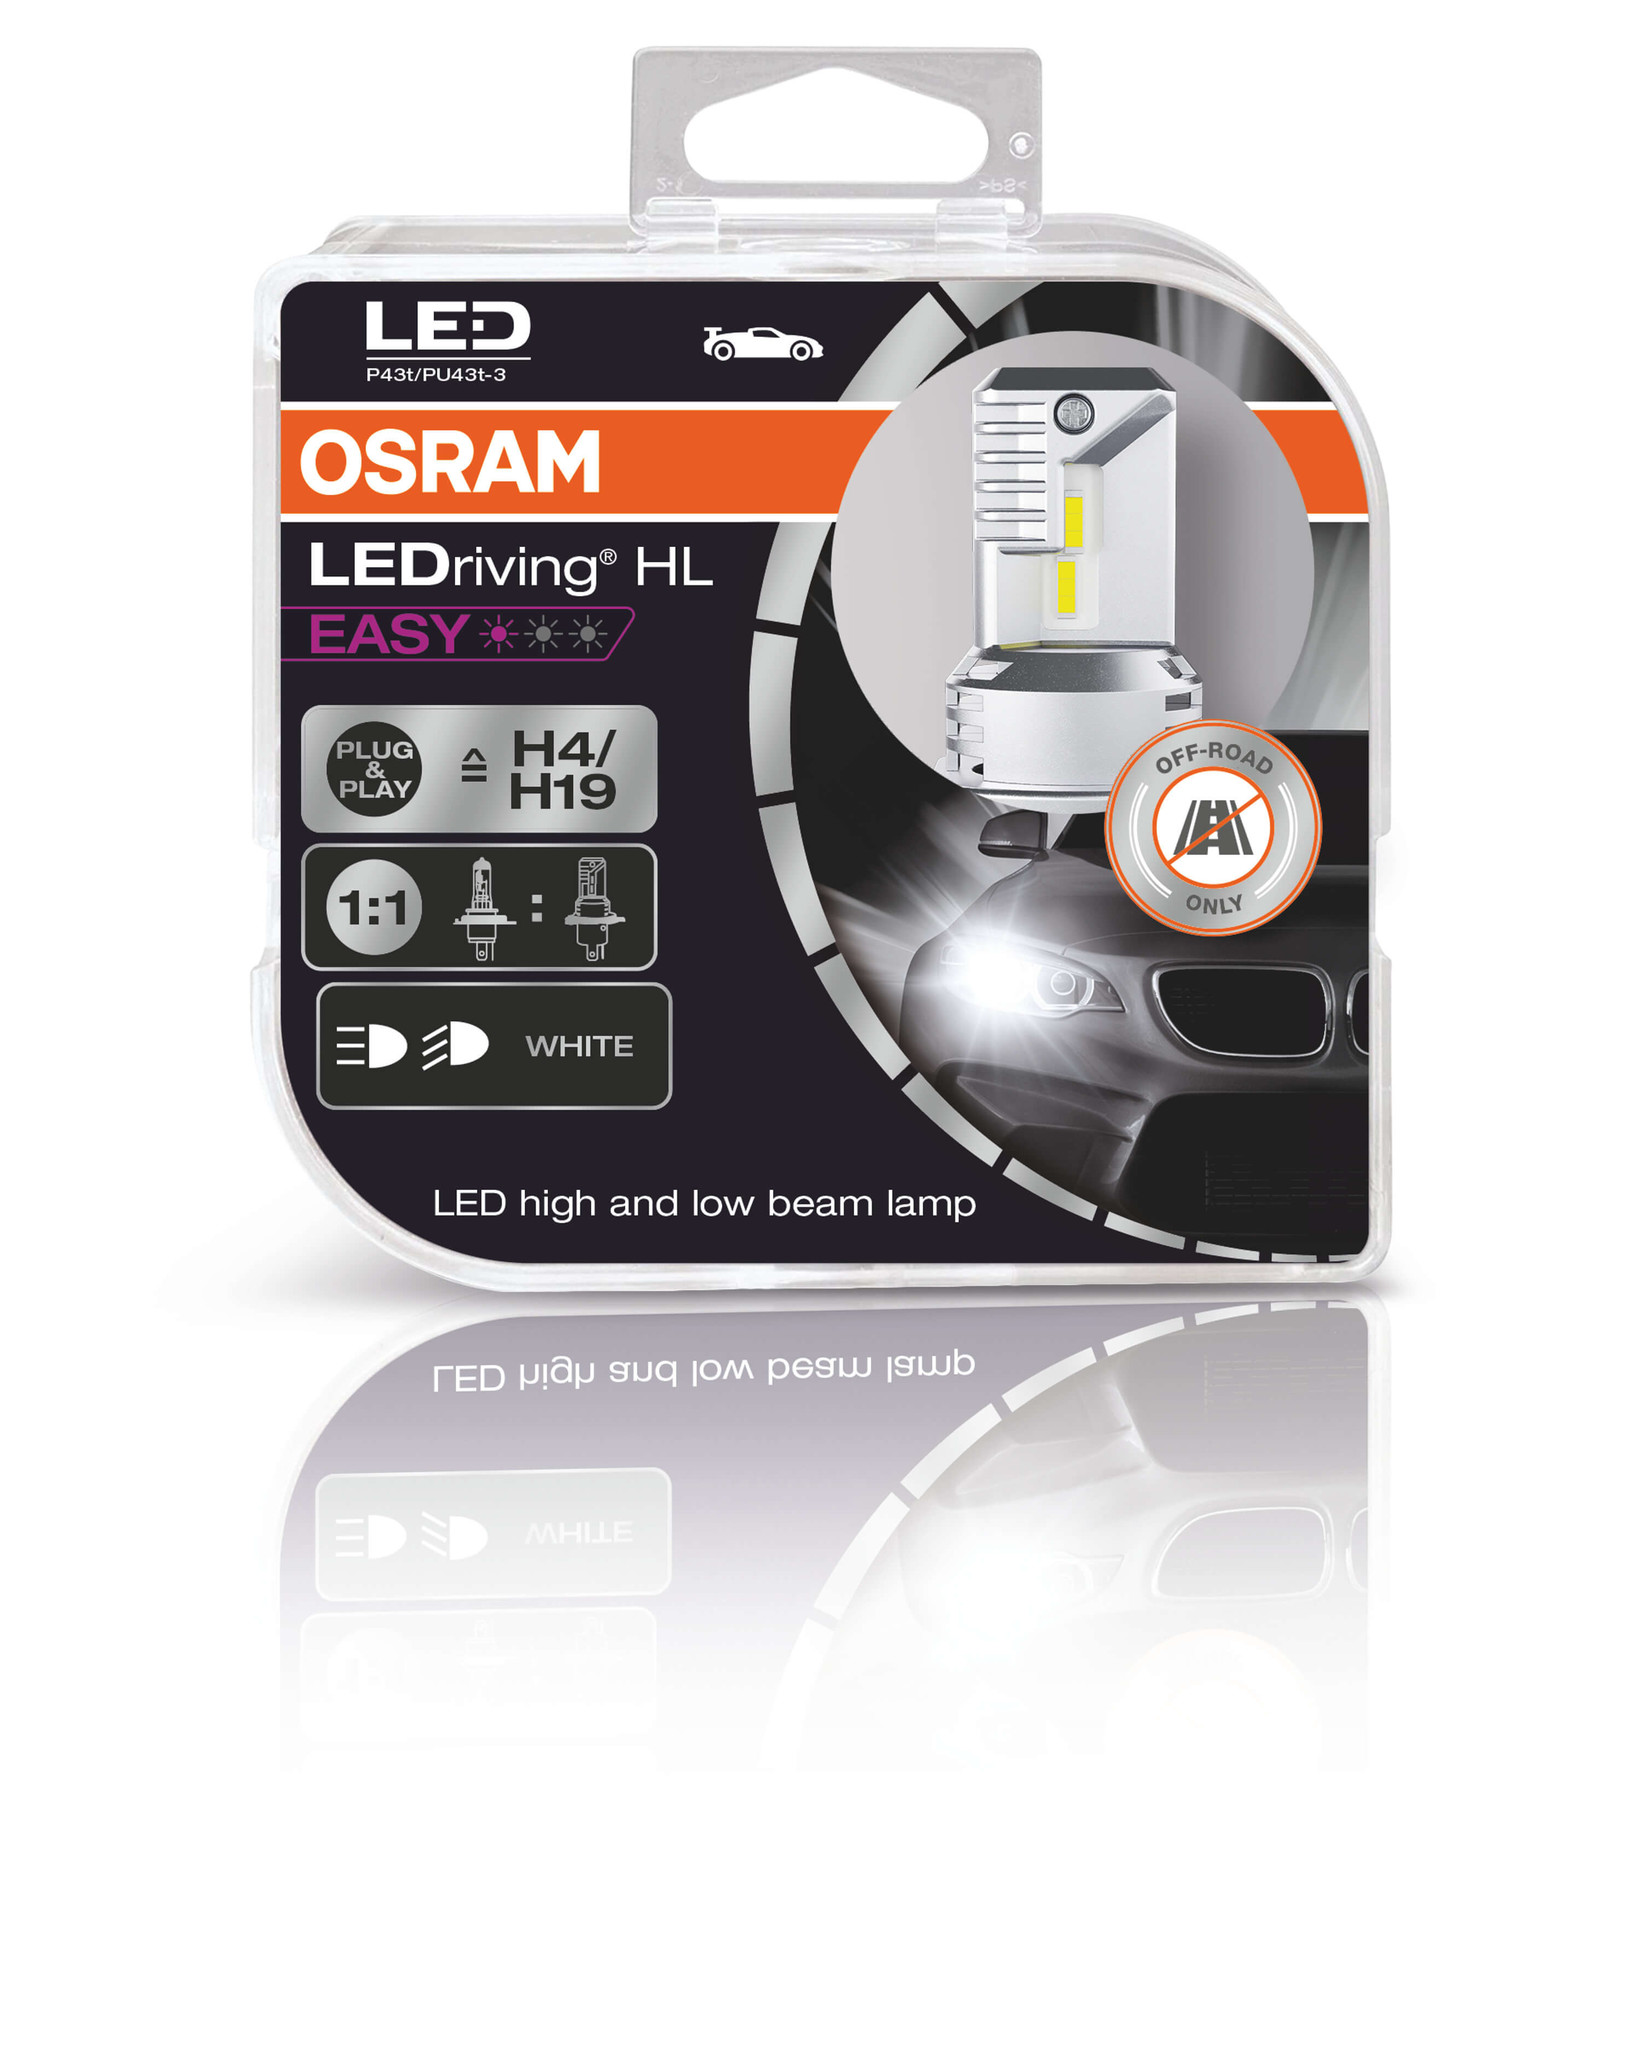 Osram LEDriving® HL EASY H4/H19